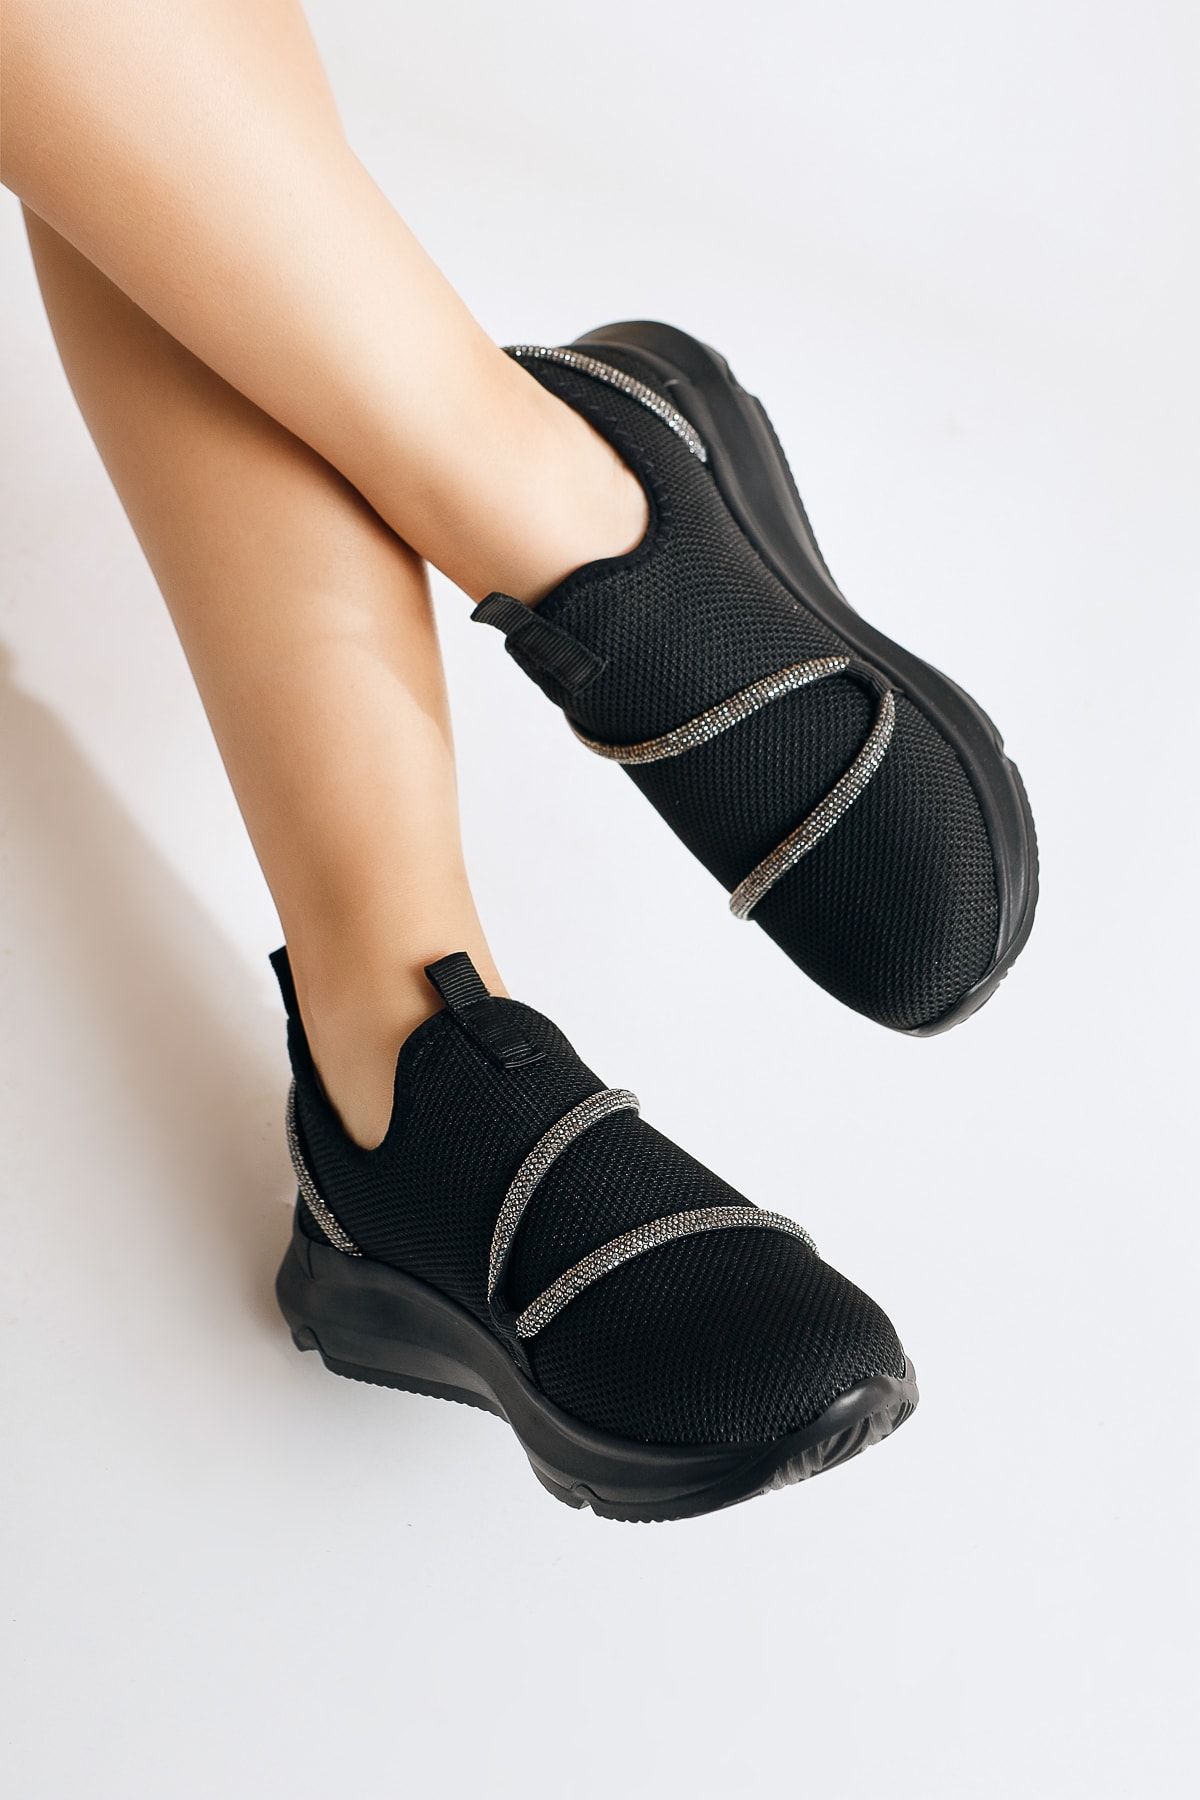 Limoya Lorrie Siyah Taş Detaylı Taş Detaylı Spor Ayakkabı